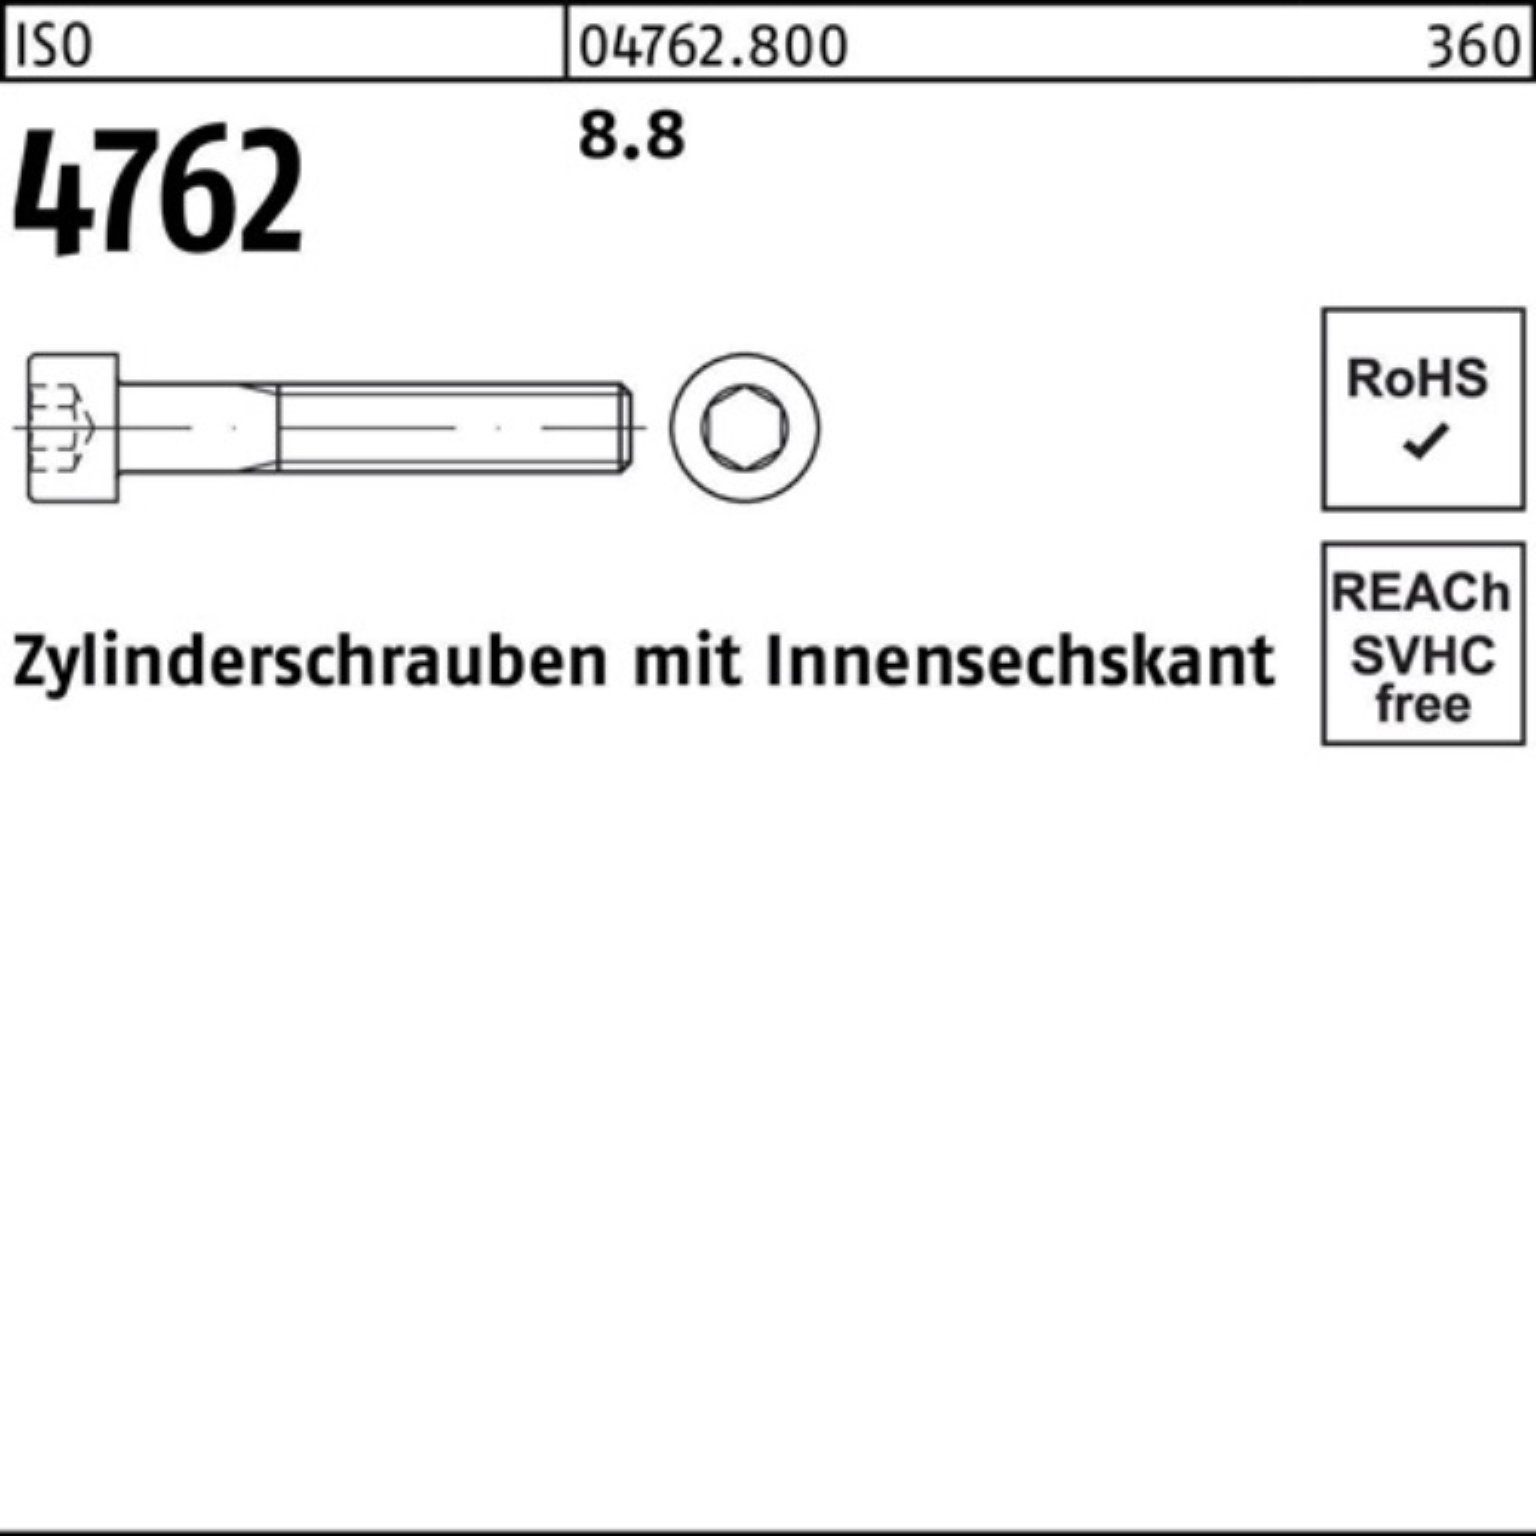 Reyher Zylinderschraube 100er M27x Stück Innen-6kt 220 I 1 Pack Zylinderschraube 4762 ISO 8.8